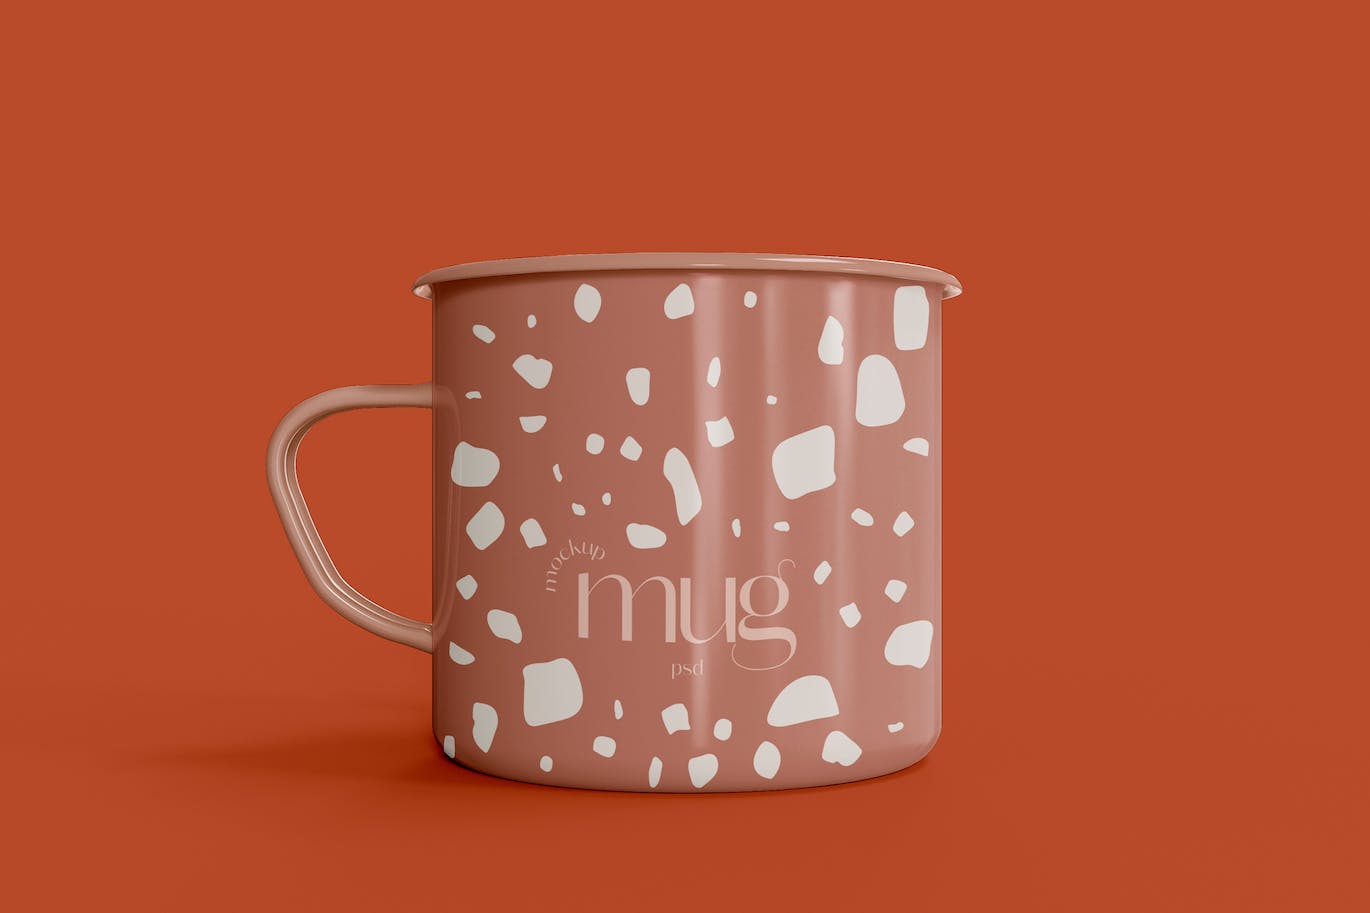 陶瓷咖啡马克杯杯身设计样机模板v1 Ceramic Mug Mockup 样机素材 第1张